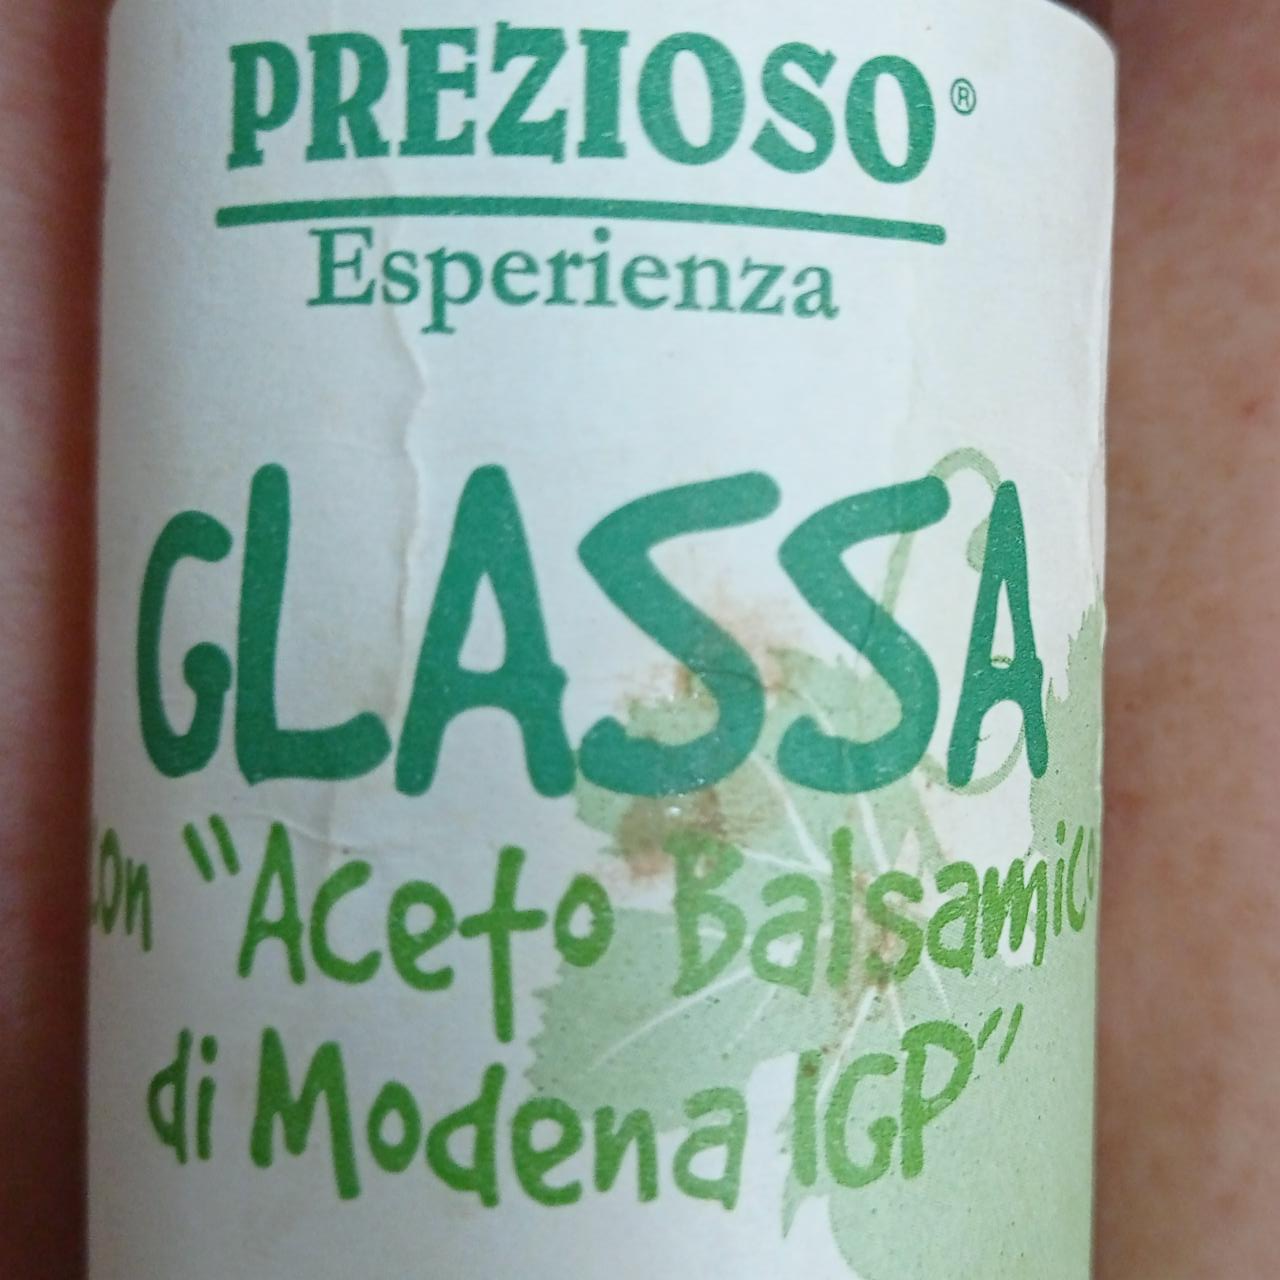 Fotografie - Glassa con Aceto Balsamico di Modena IGP Prezioso